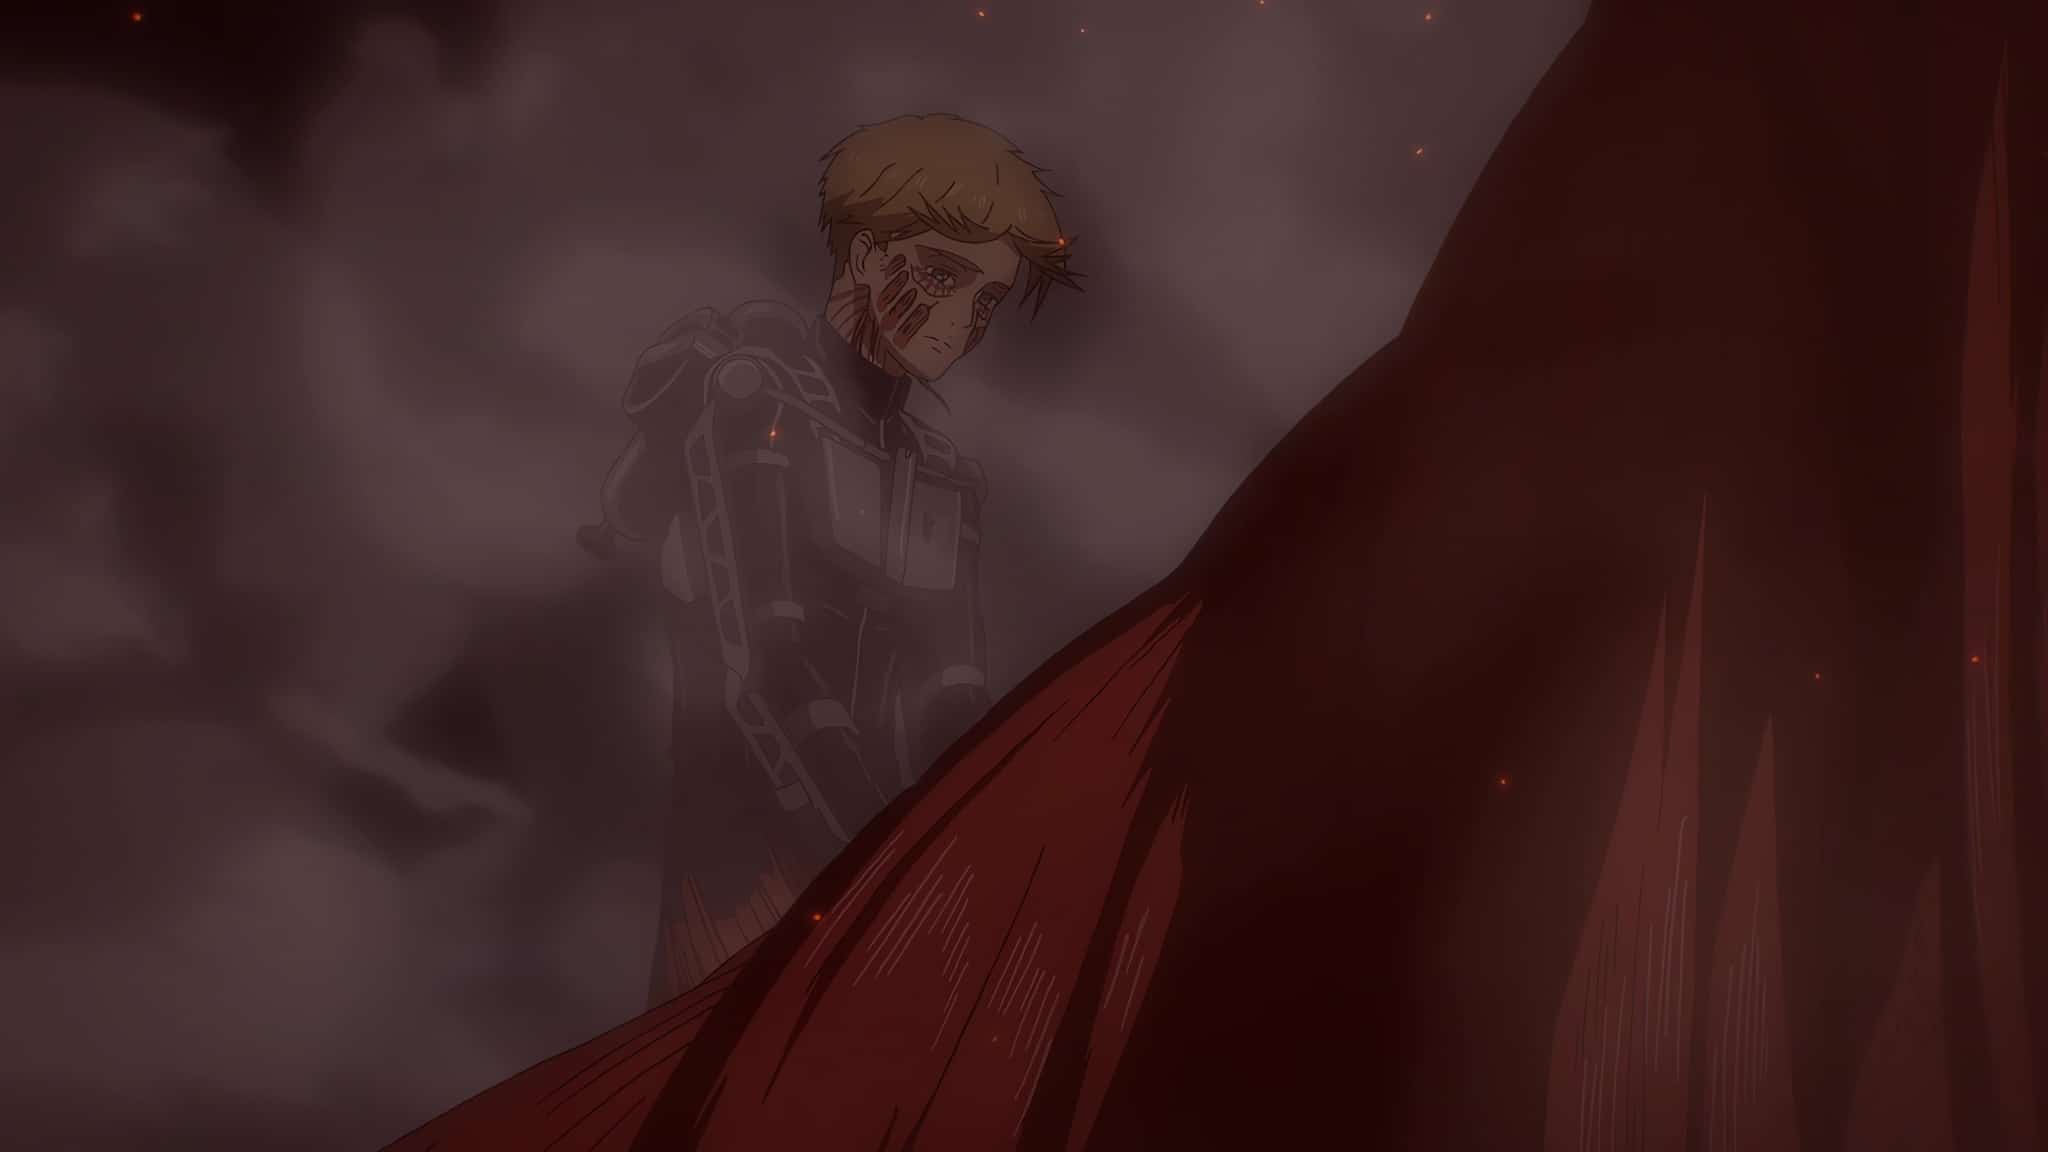 Armin détruit le port de Mahr dans l'anime L'Attaque des Titans